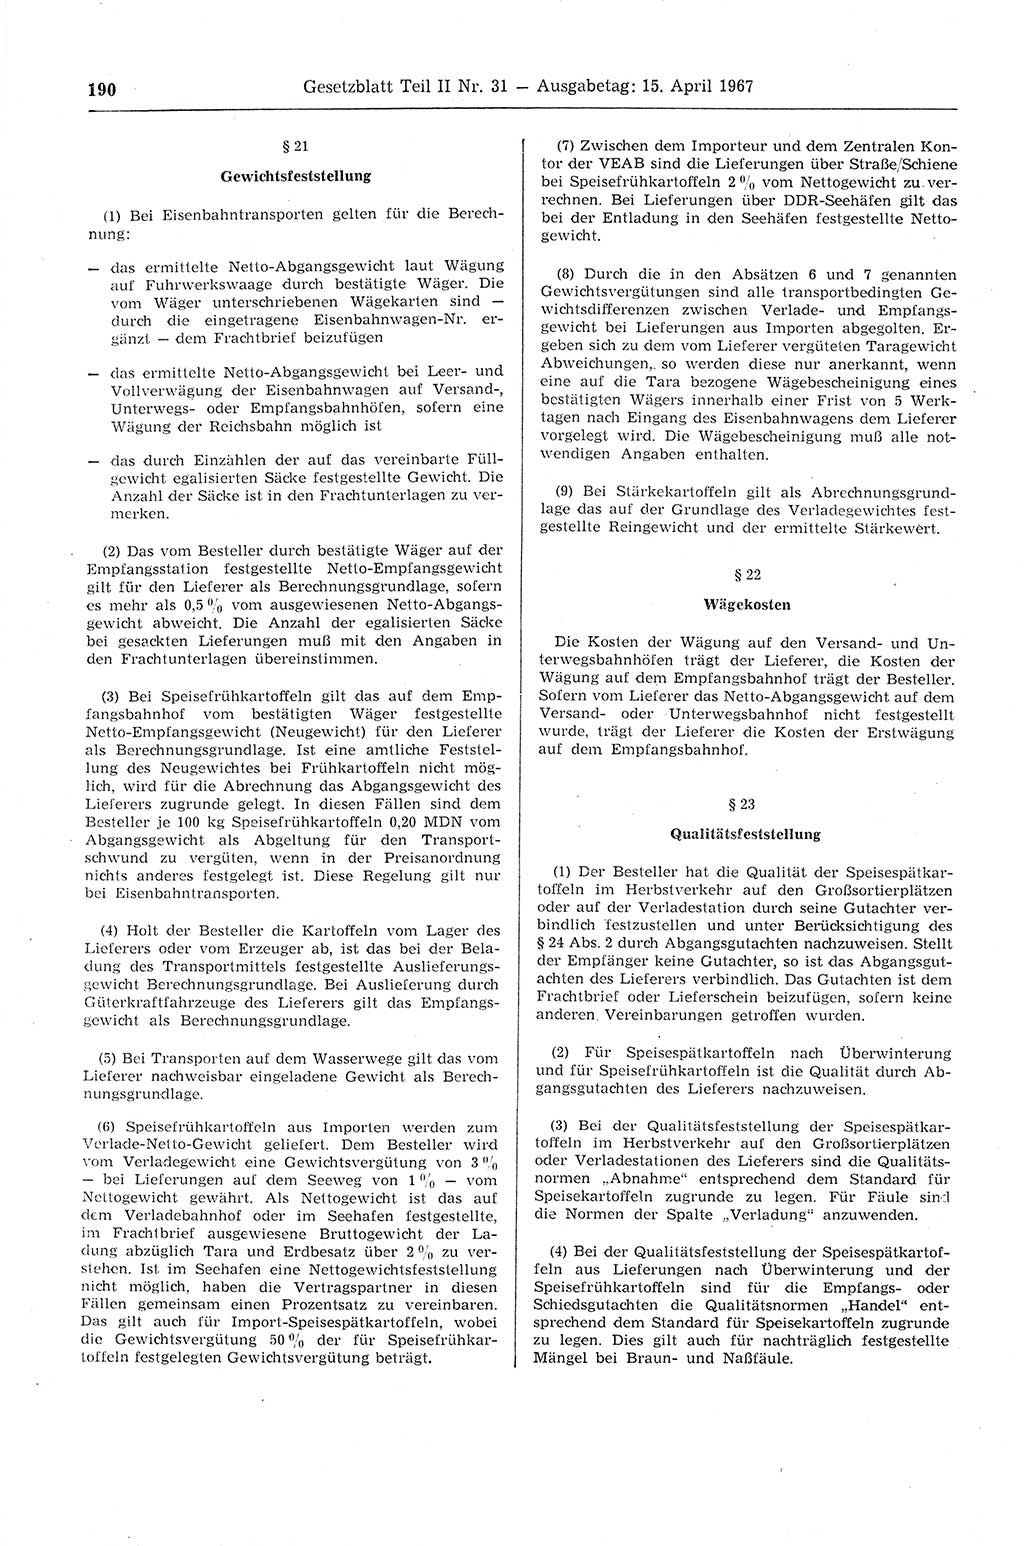 Gesetzblatt (GBl.) der Deutschen Demokratischen Republik (DDR) Teil ⅠⅠ 1967, Seite 190 (GBl. DDR ⅠⅠ 1967, S. 190)